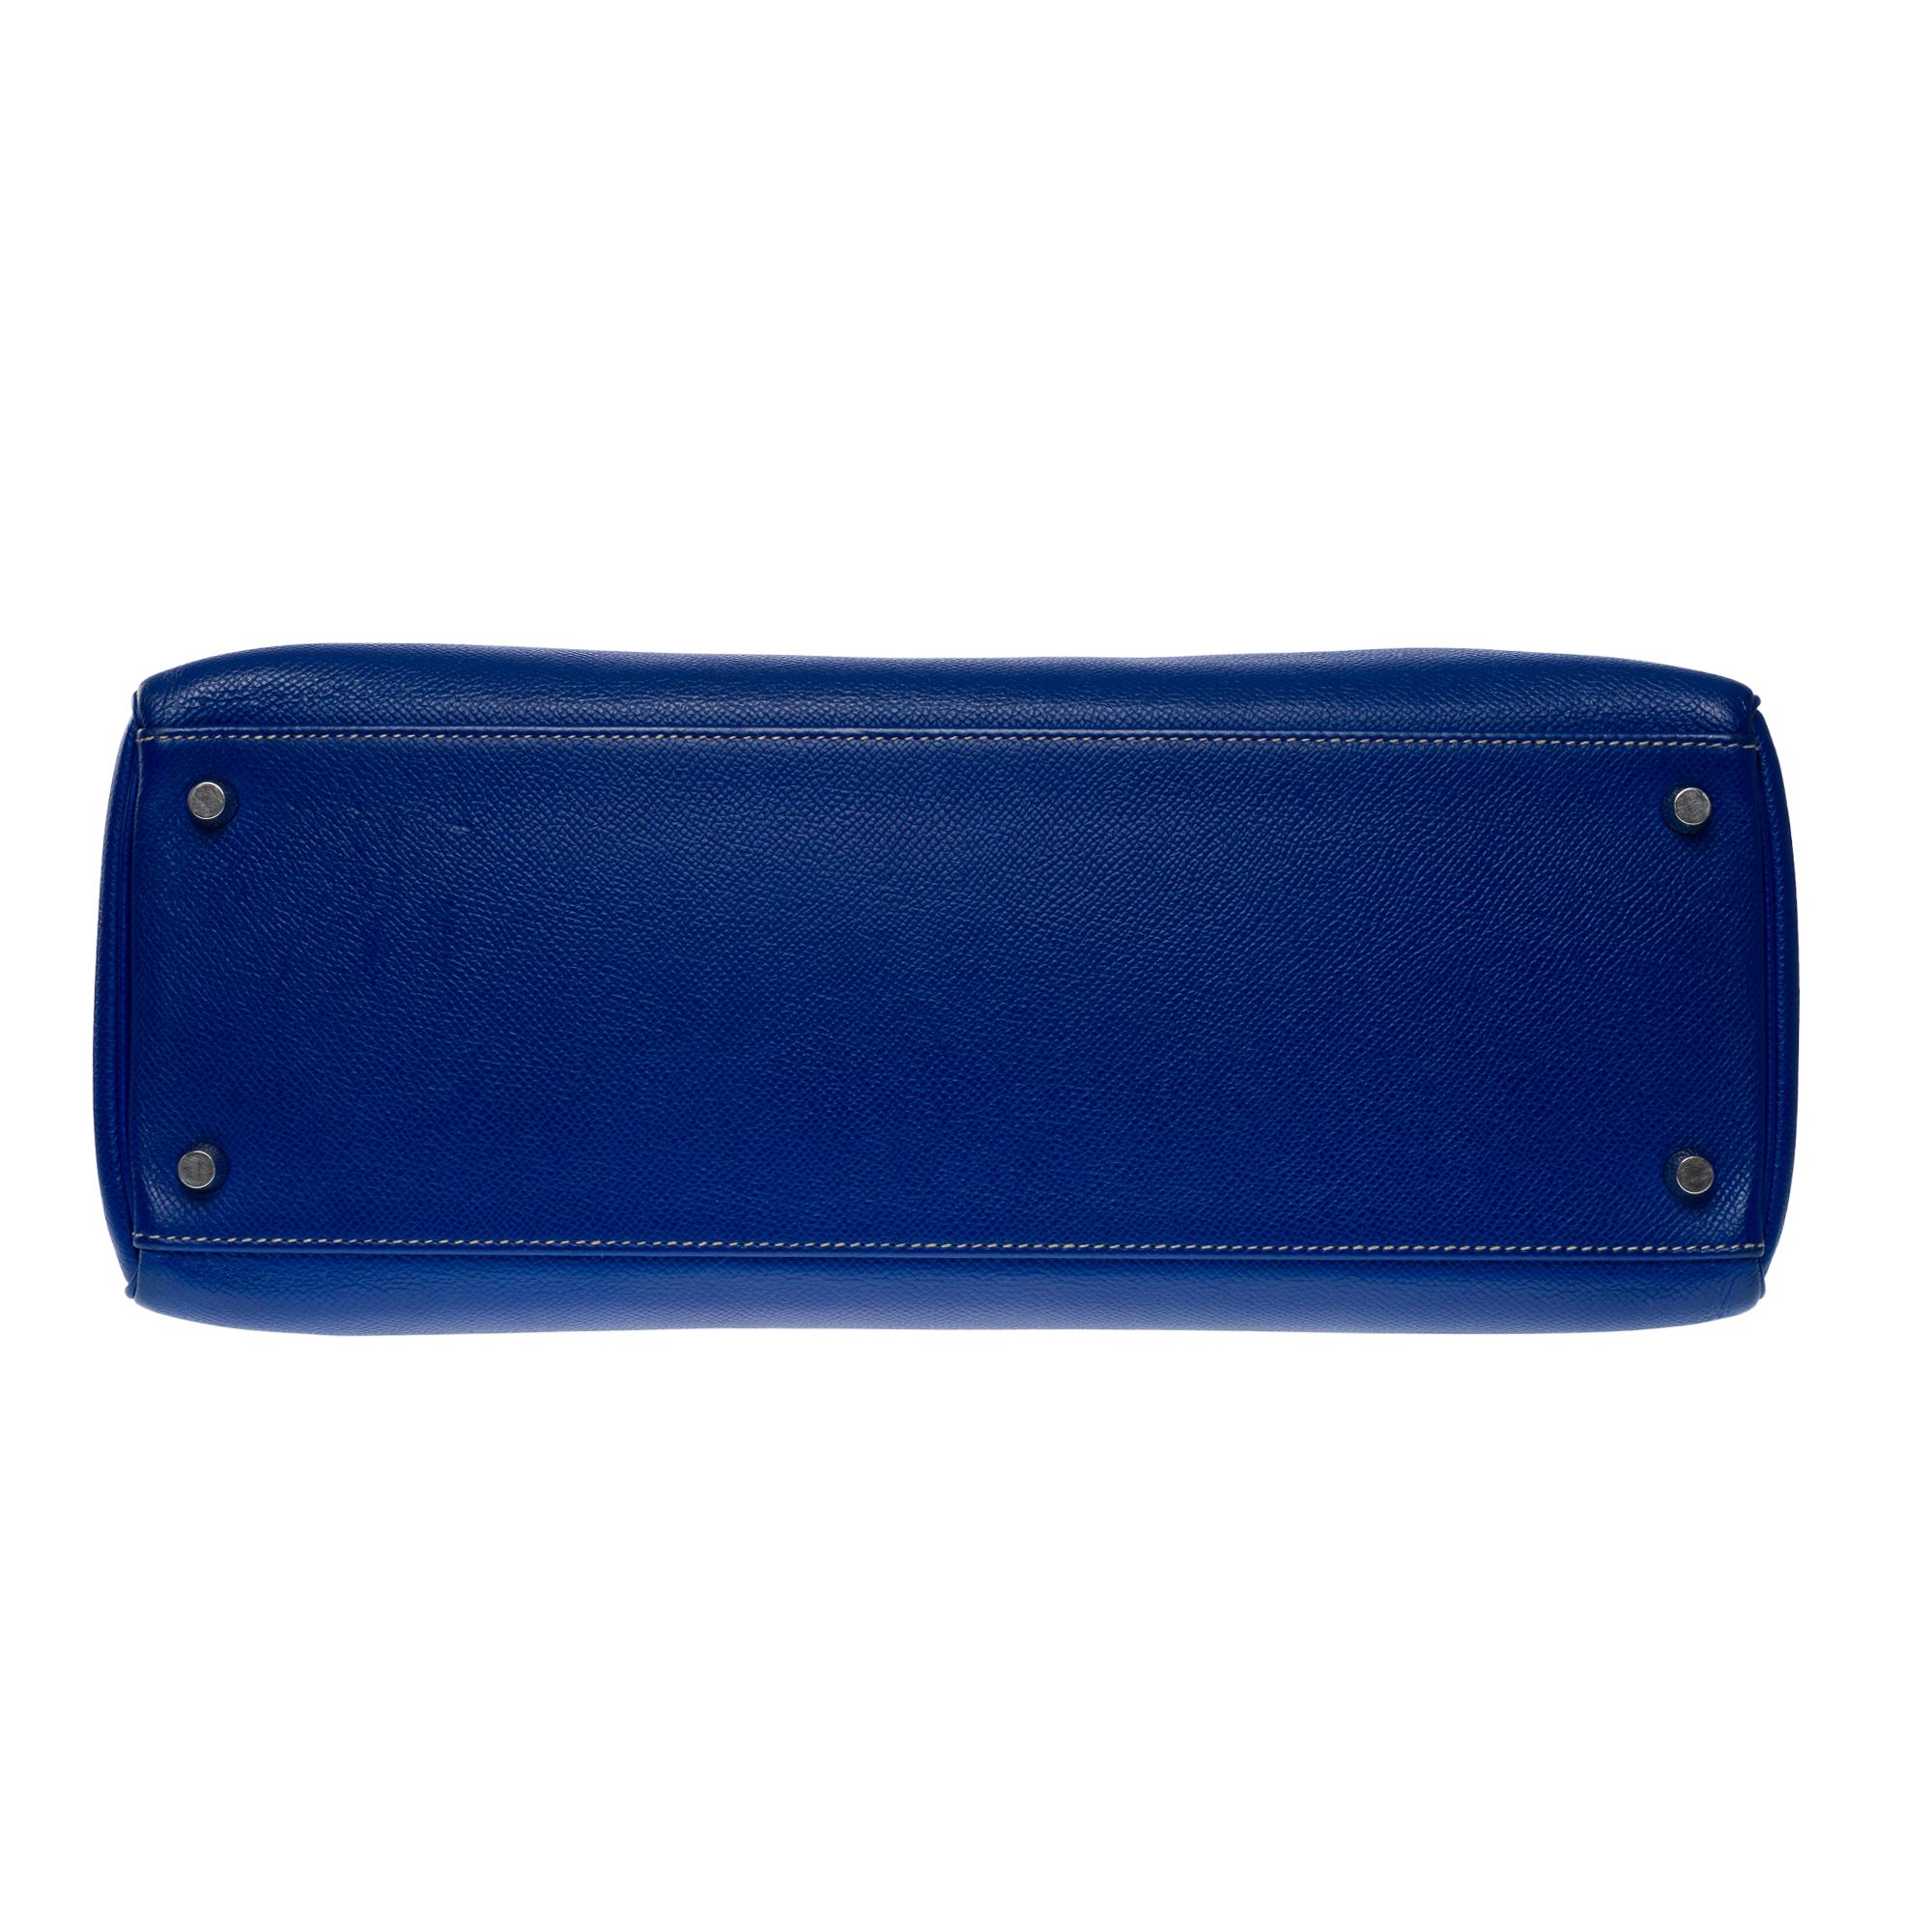 Candy Edition Hermès Kelly 35 retourne handbag strap in Blue Epsom leather, SHW 6